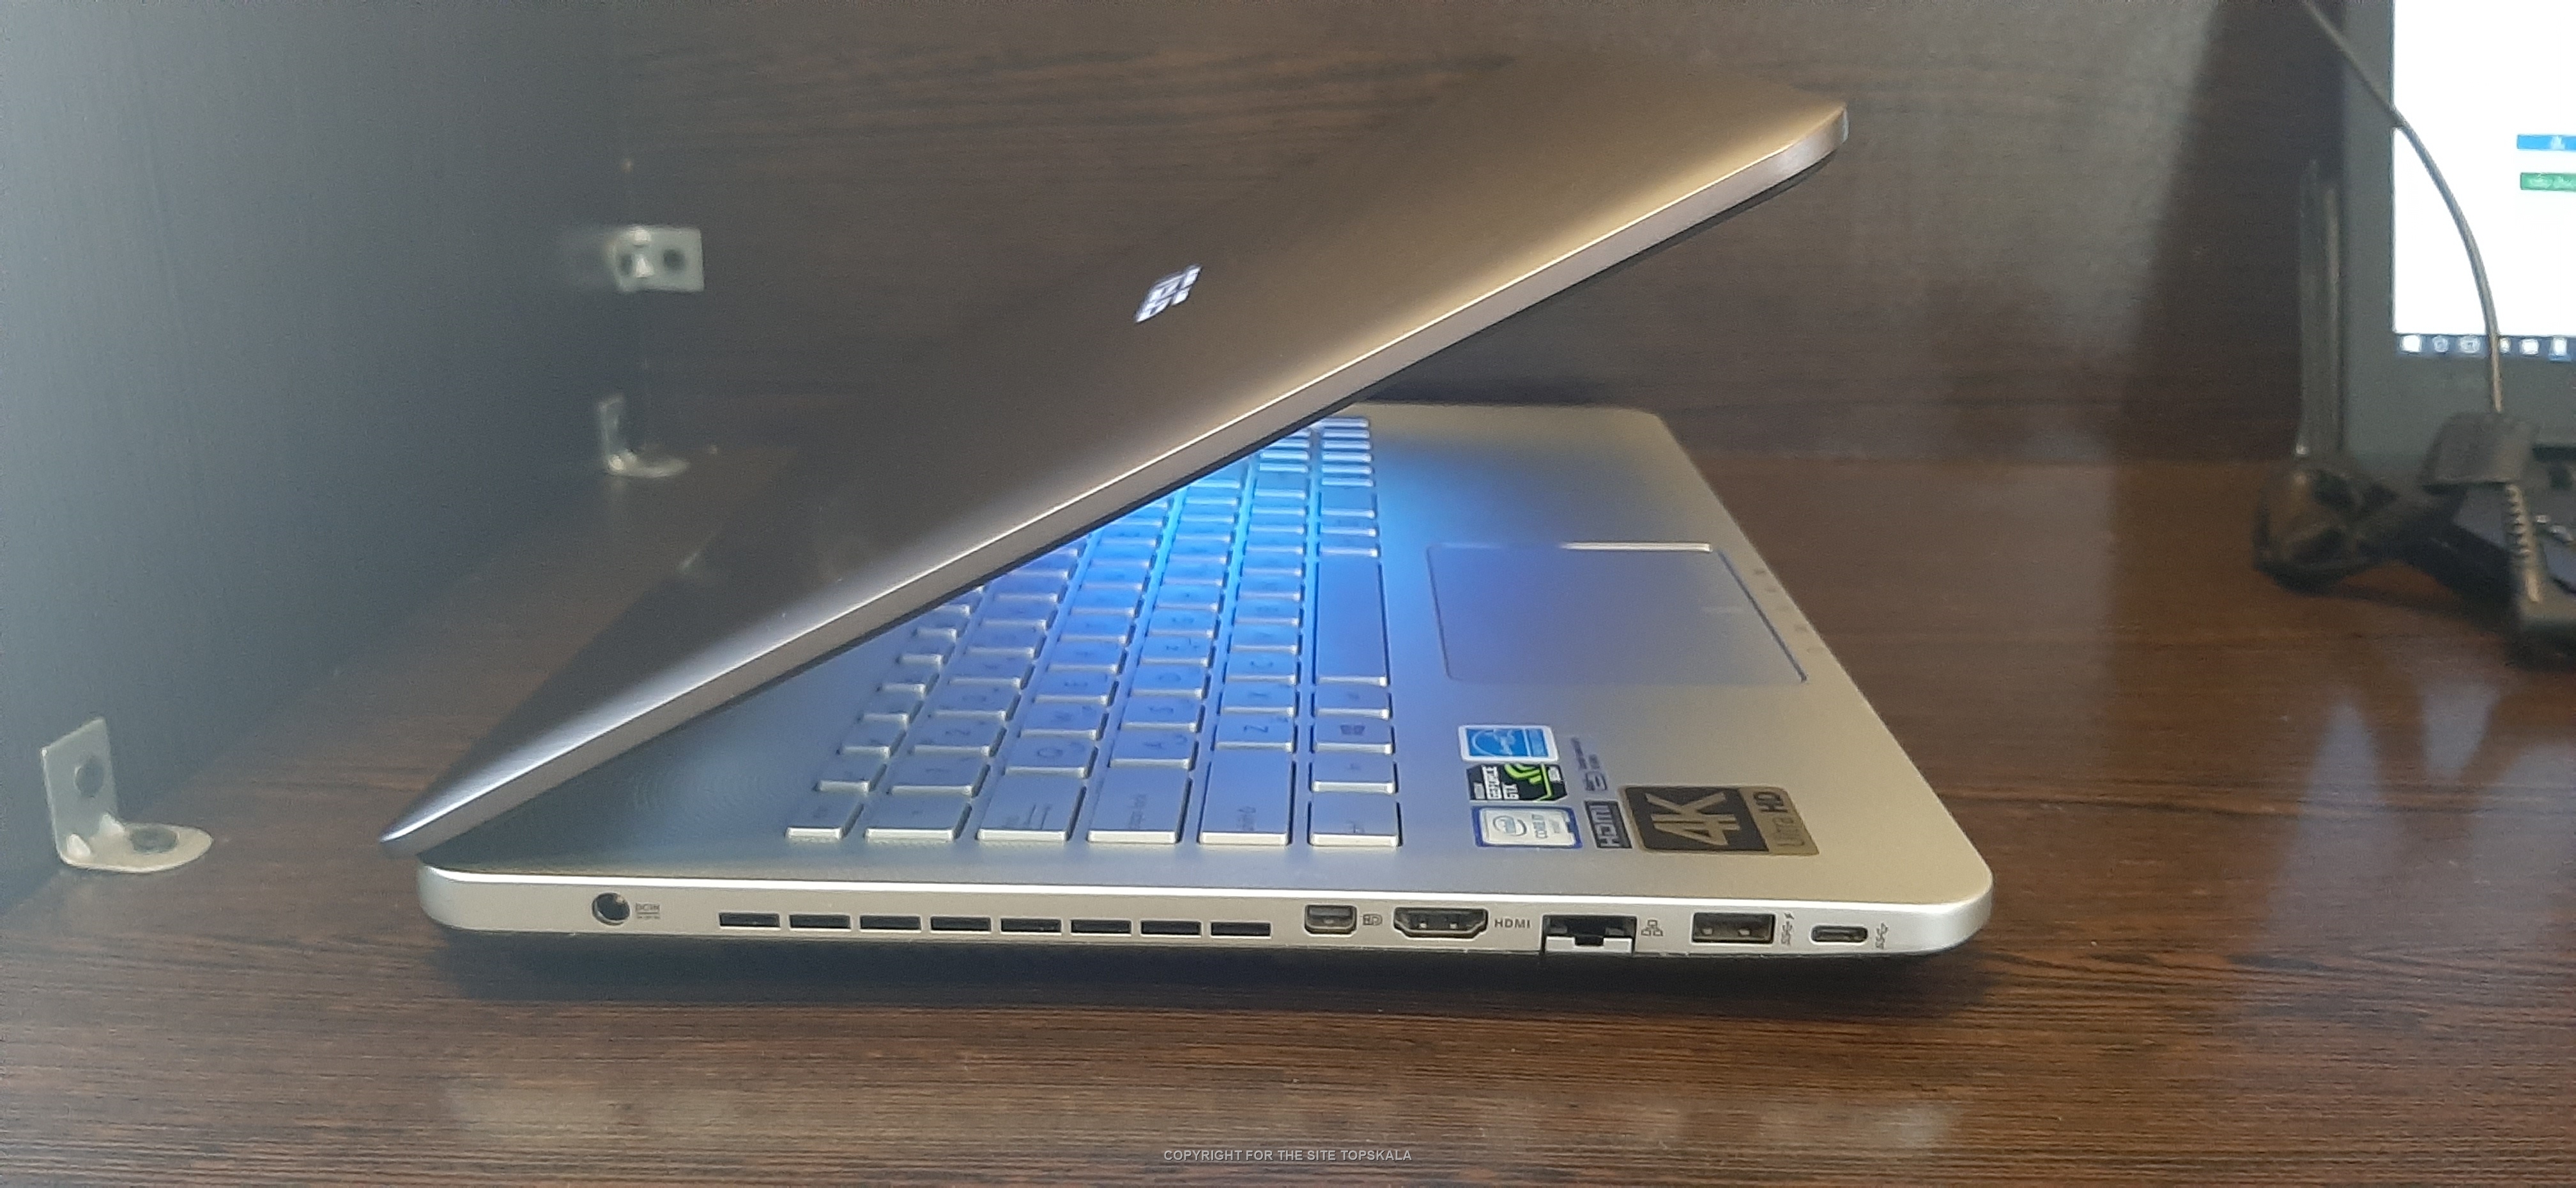  لپ تاپ استوک ایسوس مدل N552VW با مشخصات i7-16GB-128GB-SSD-1TB-HDD-4GB 1050ti